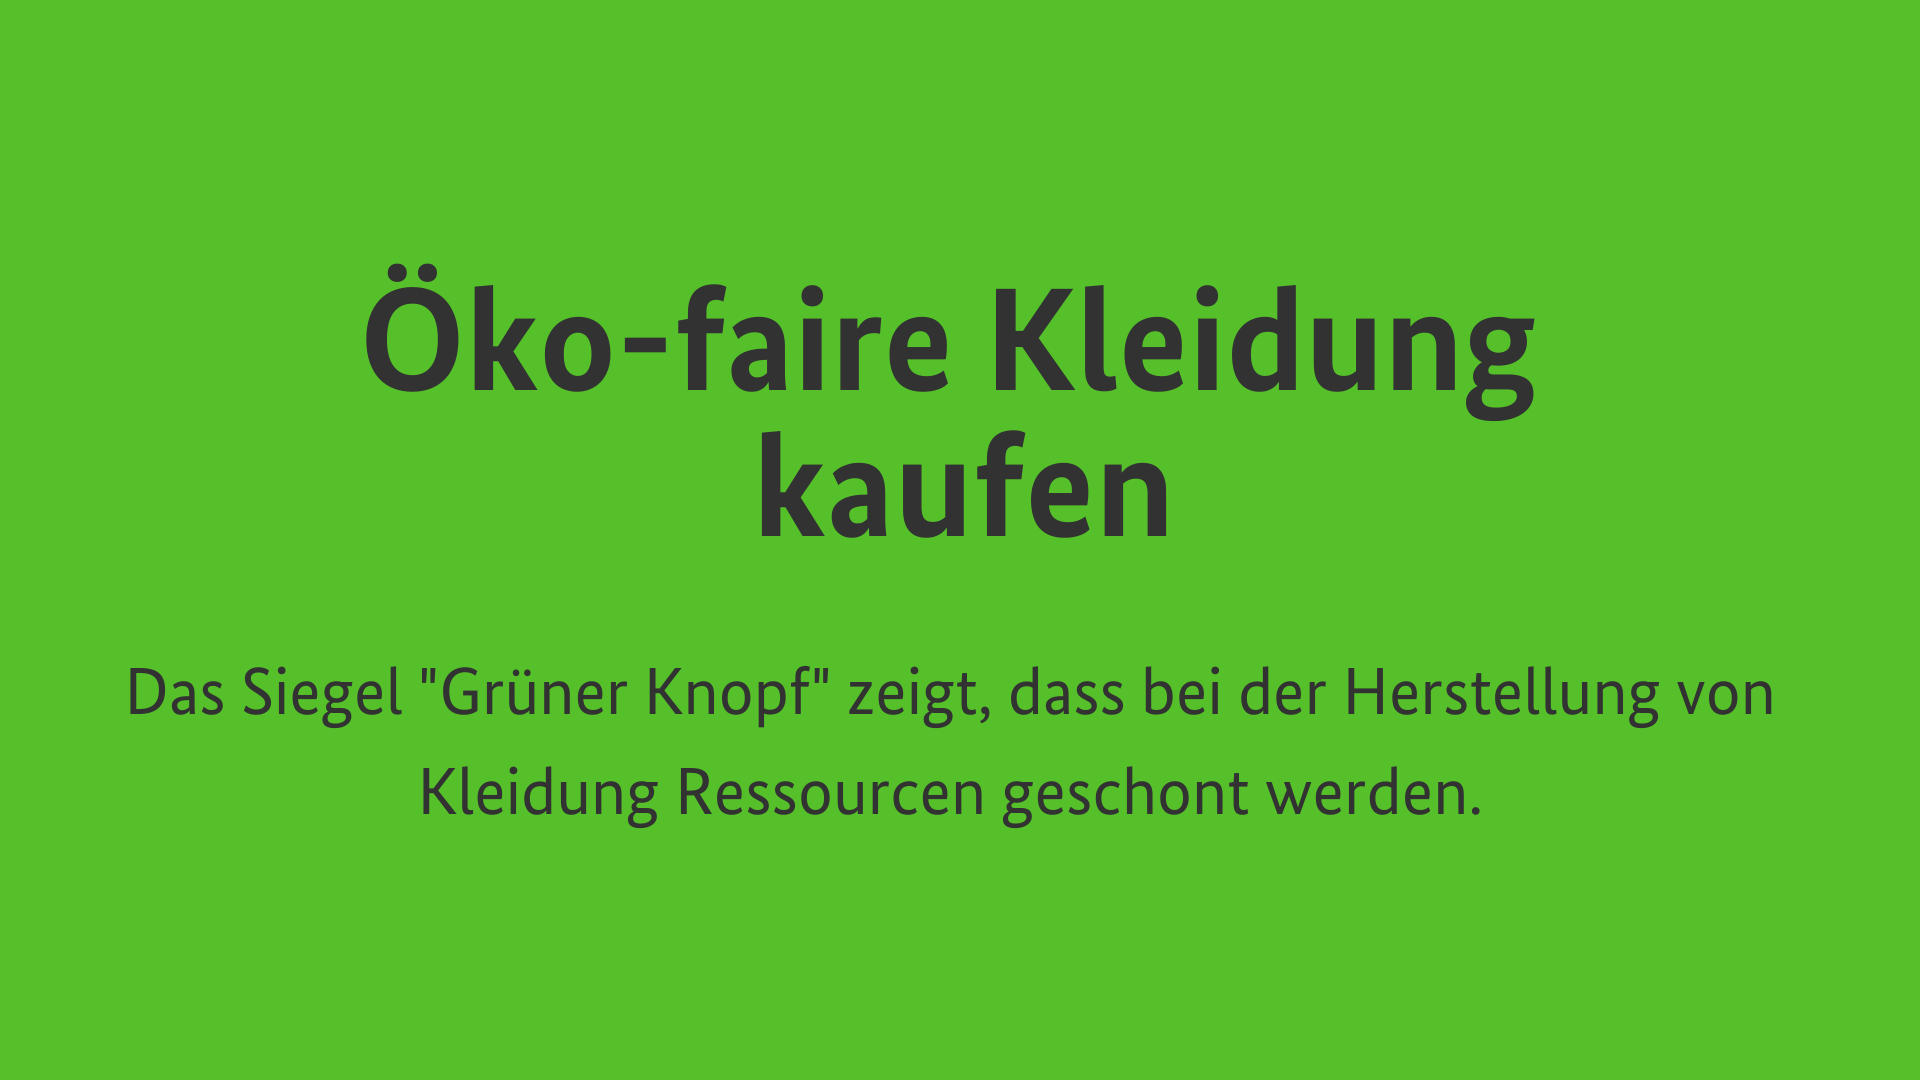 Öko-faire Kleidung kaufen: Das Siegel "Grüner Knopf" zeigt, dass bei der Herstellung von Kleidung Ressourcen geschont werden.